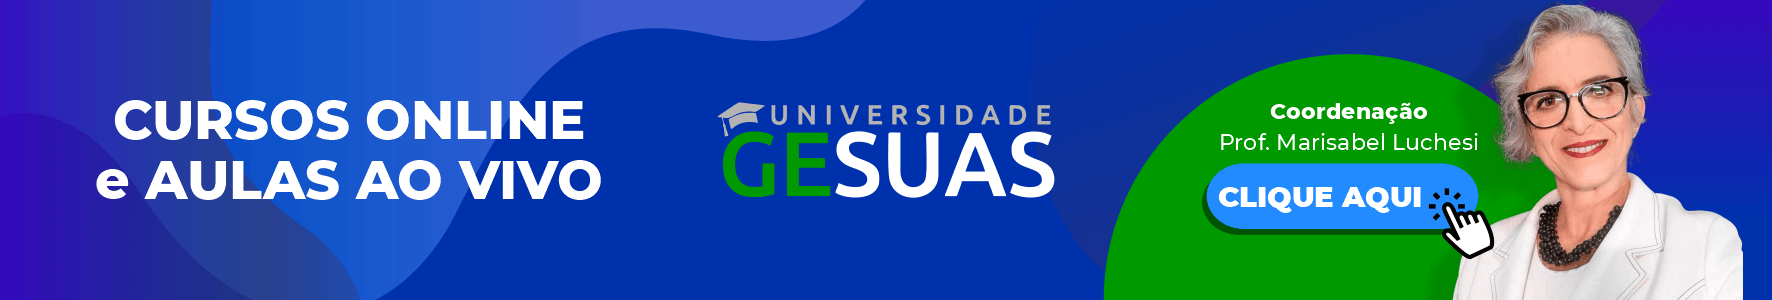 Veja como a Universidade GESUAS é a solução completa para a educação continuada dos profissionais do SUAS!